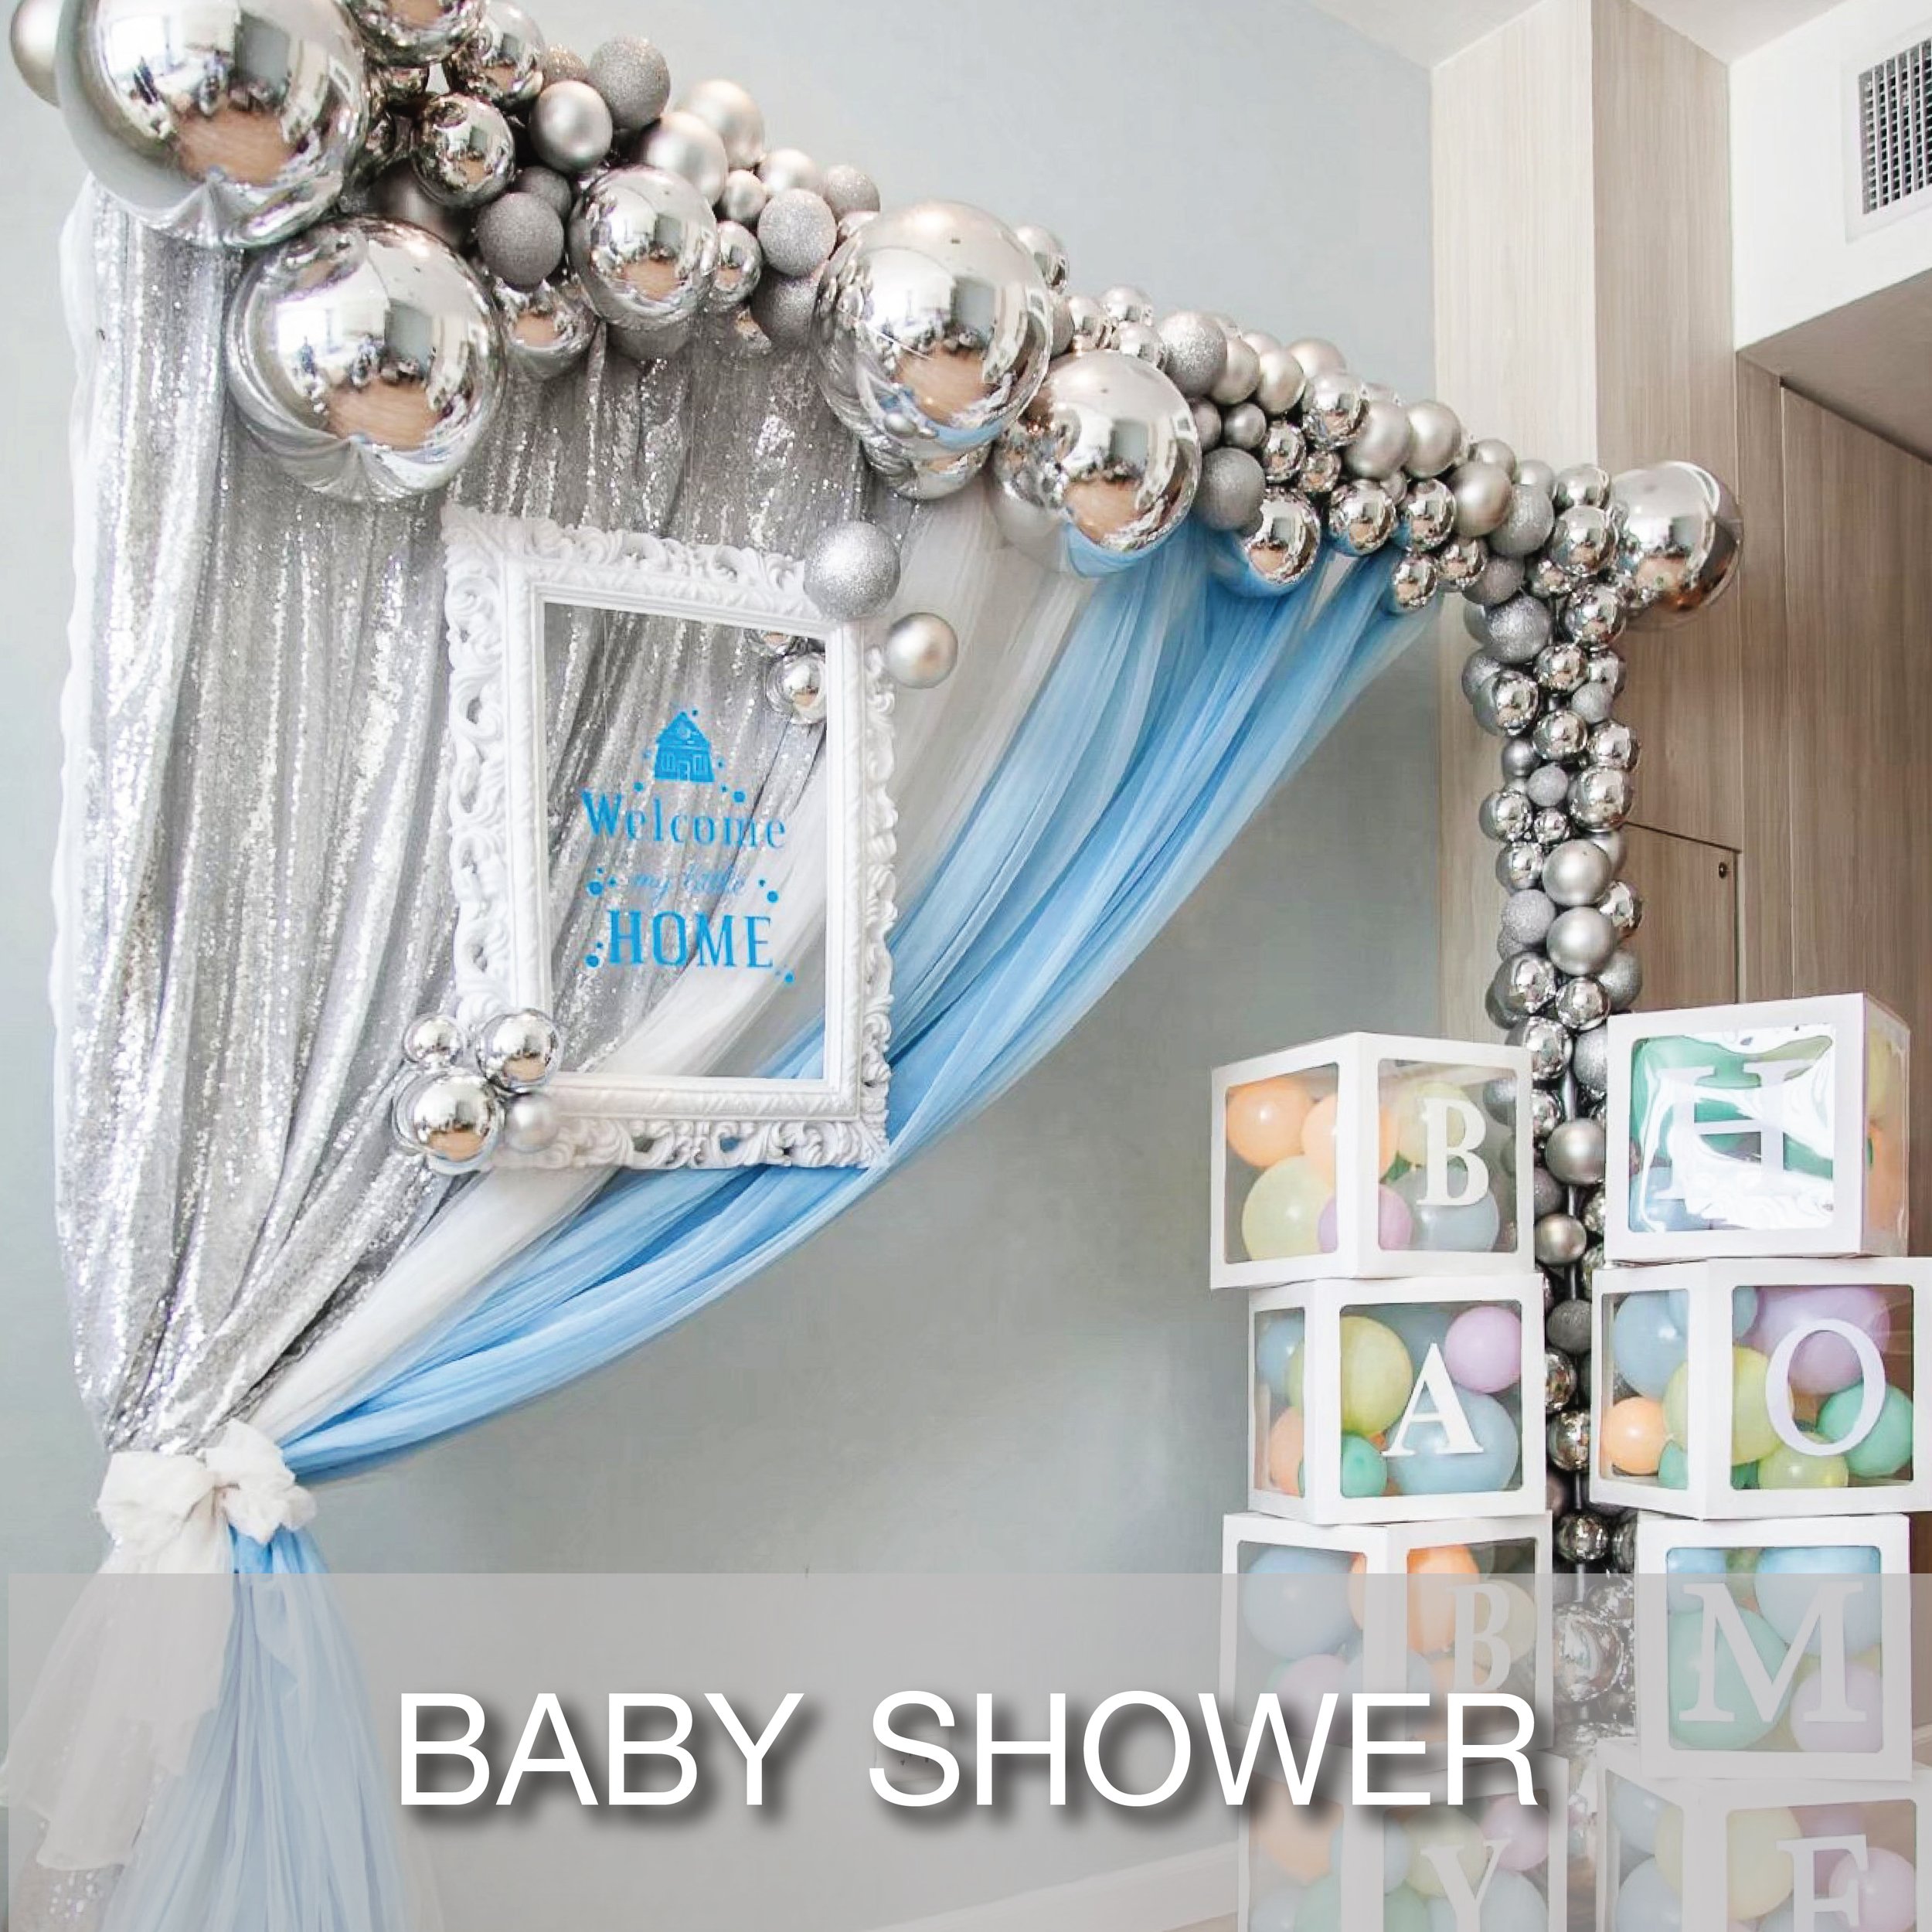 Cover_Popular Theme_Baby Shower-01.jpg